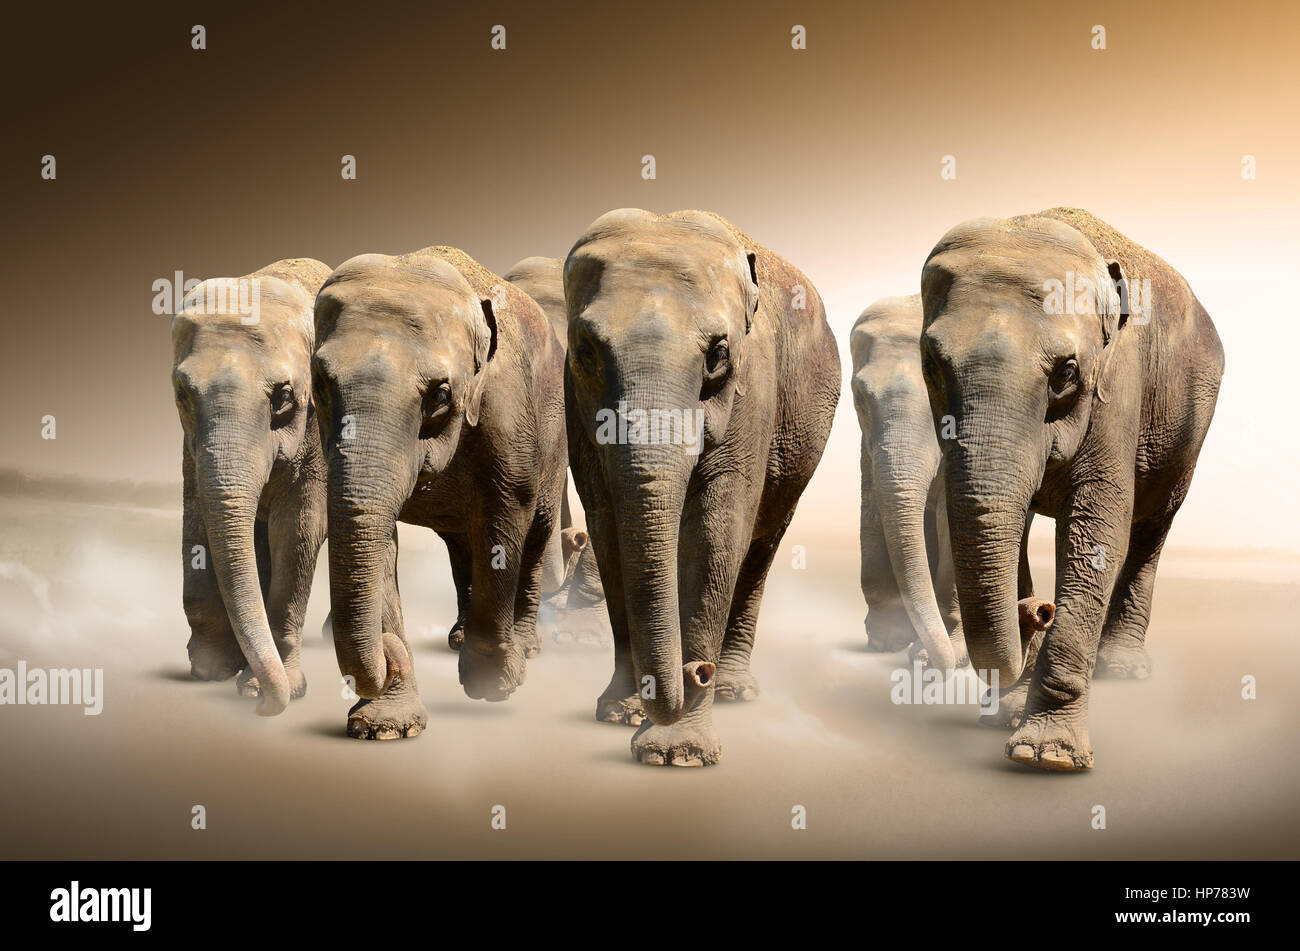 Herde von Elefanten. Tier-Konzept für Hintergrund, Web-Banner, Werbung, Werbematerialien, Leinwand drucken, Präsentationsvorlage. Stockfoto